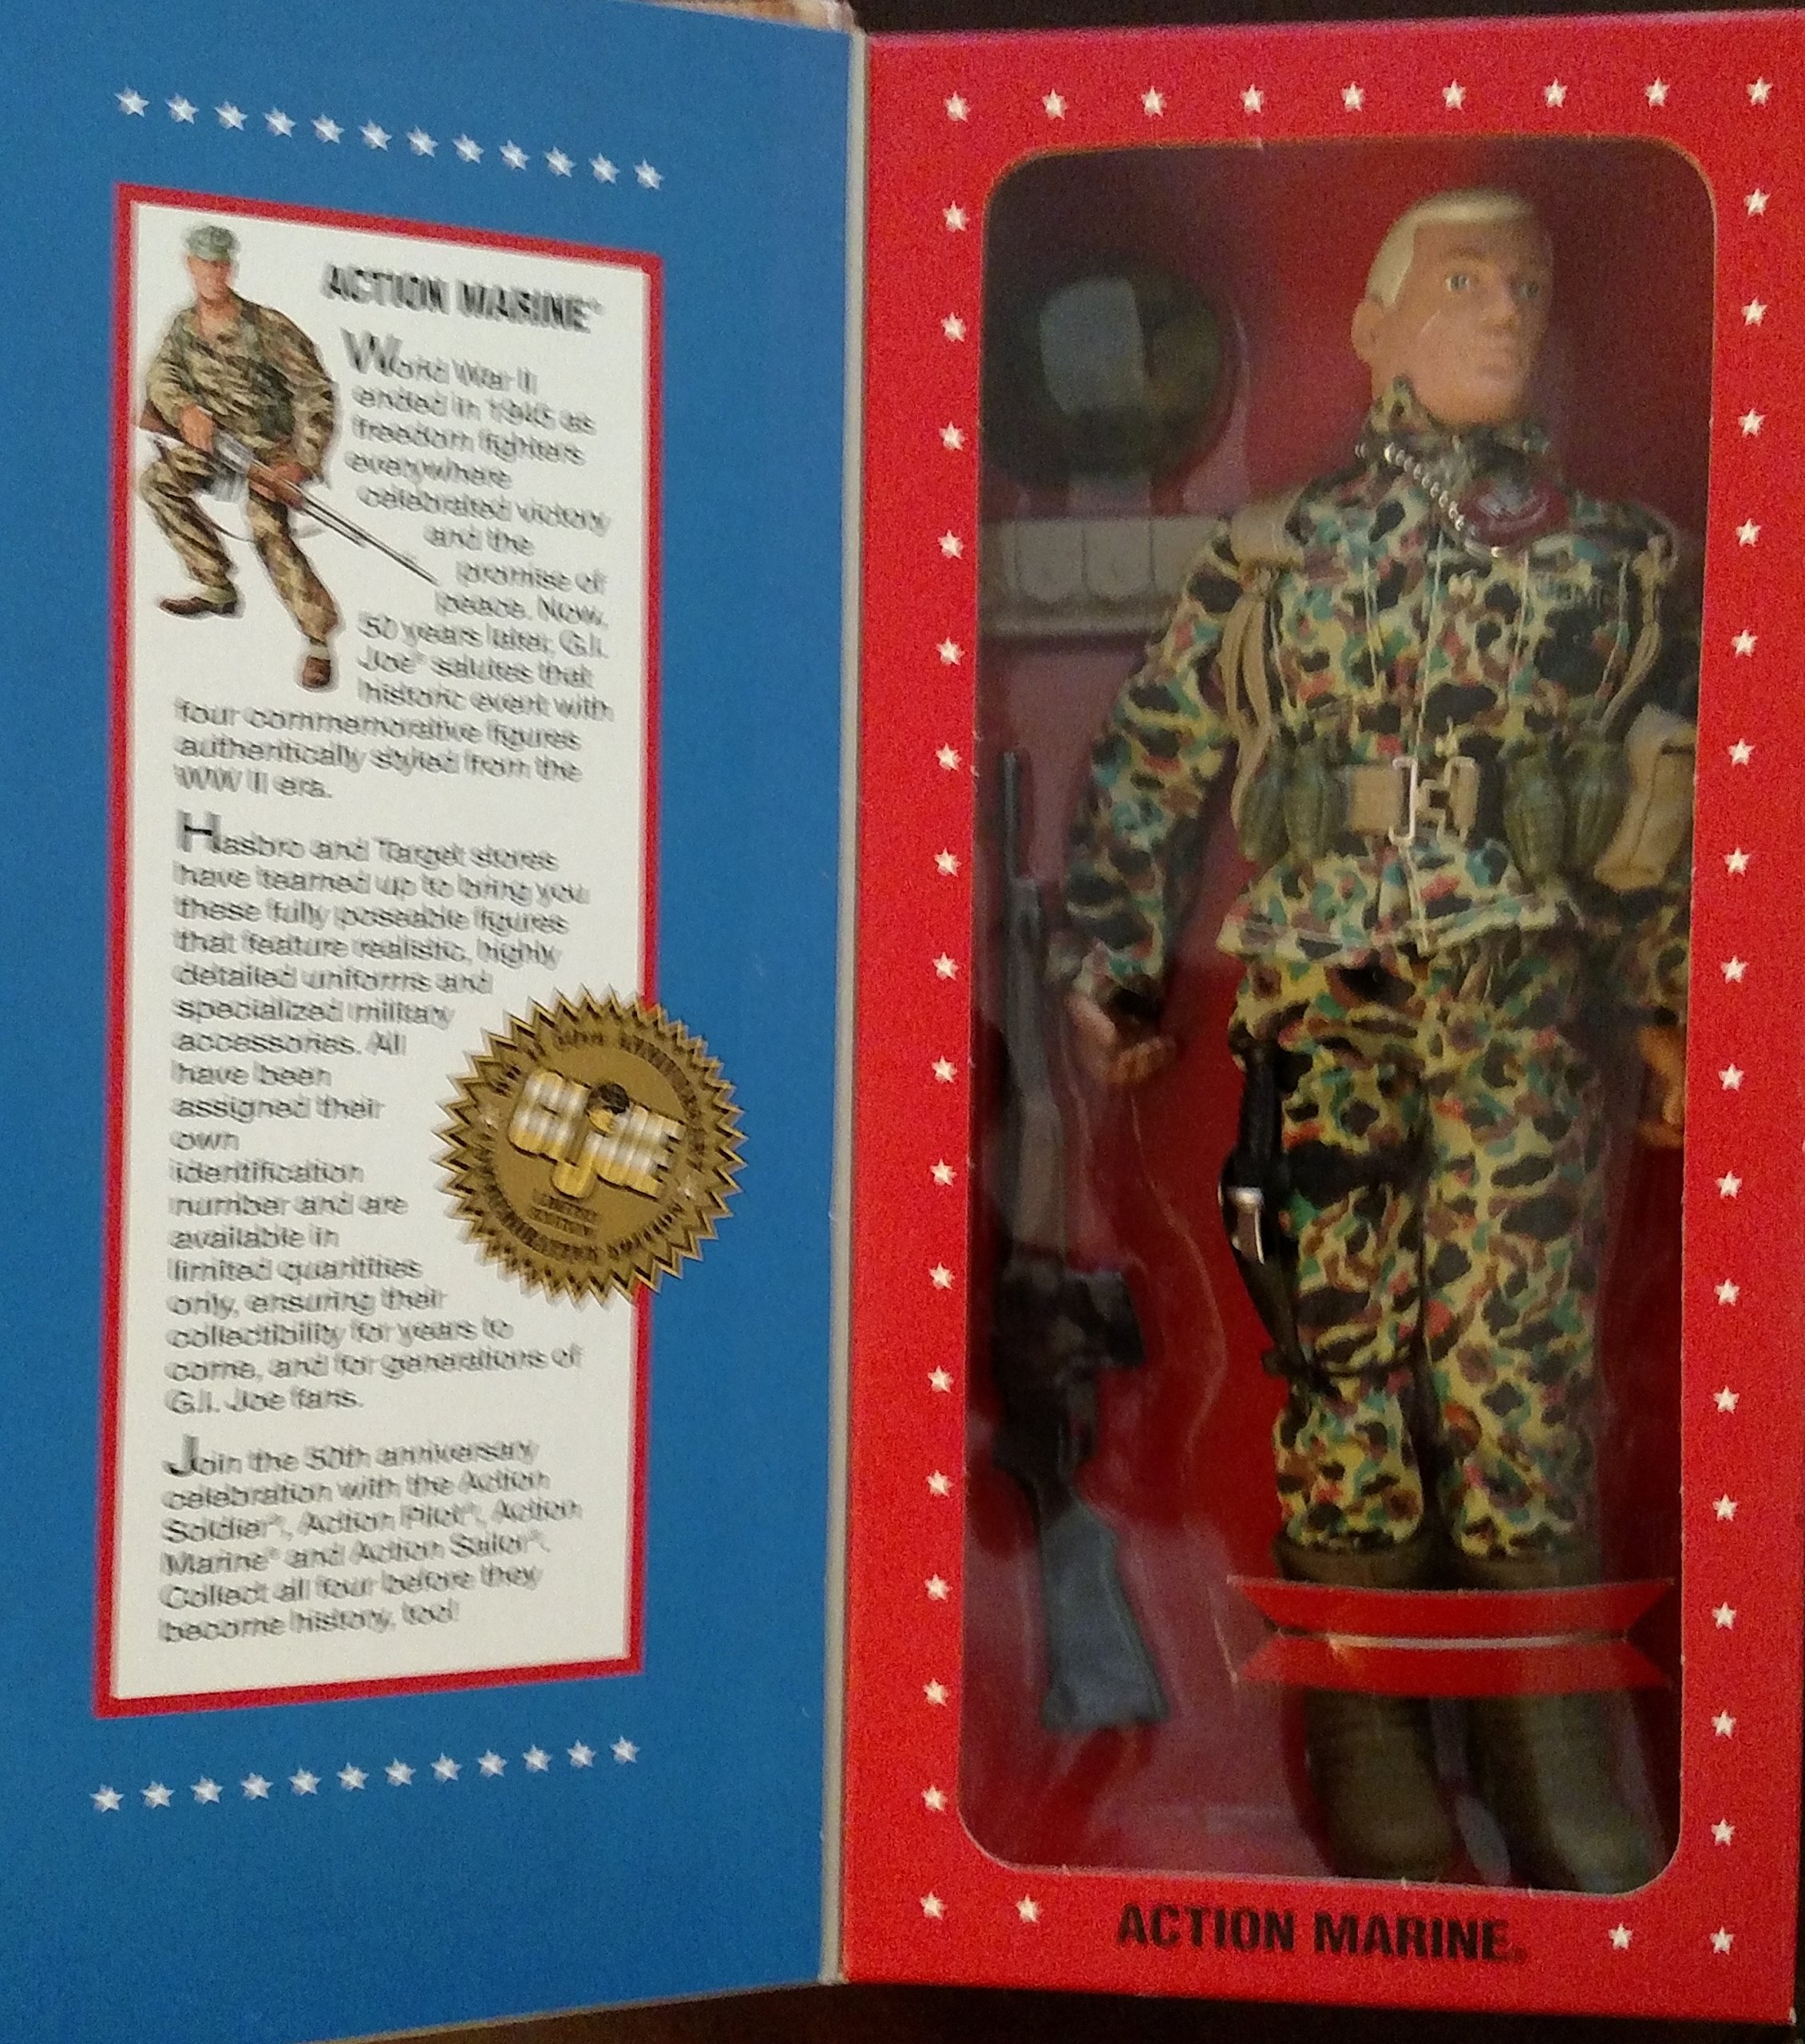 ハズブロ 30cm GI Joe Action Marine Action Figure WWII 50th Anniversary Numbered Commemorative Edition Hasbro 1995 送